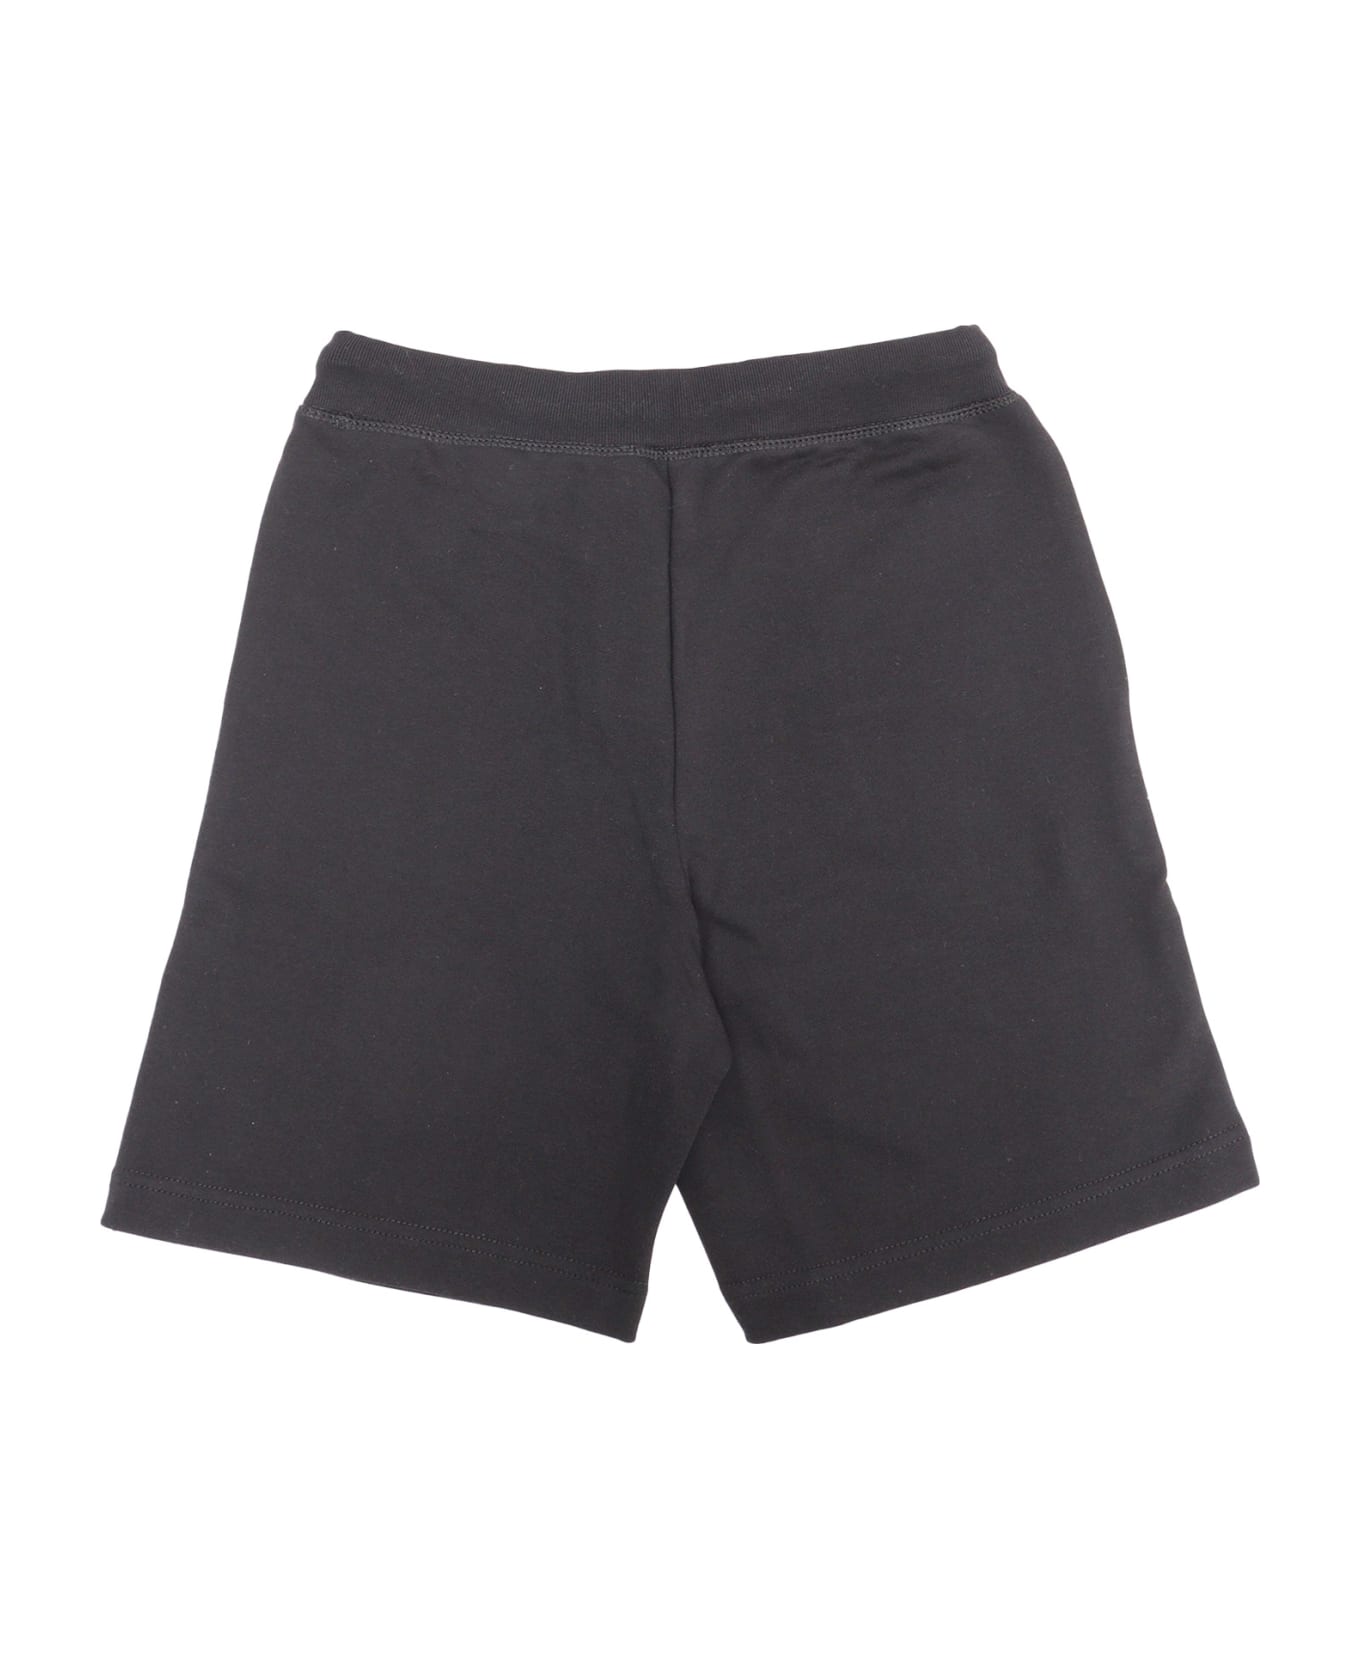 Dsquared2 D-squared2 Sports Shorts - BLACK